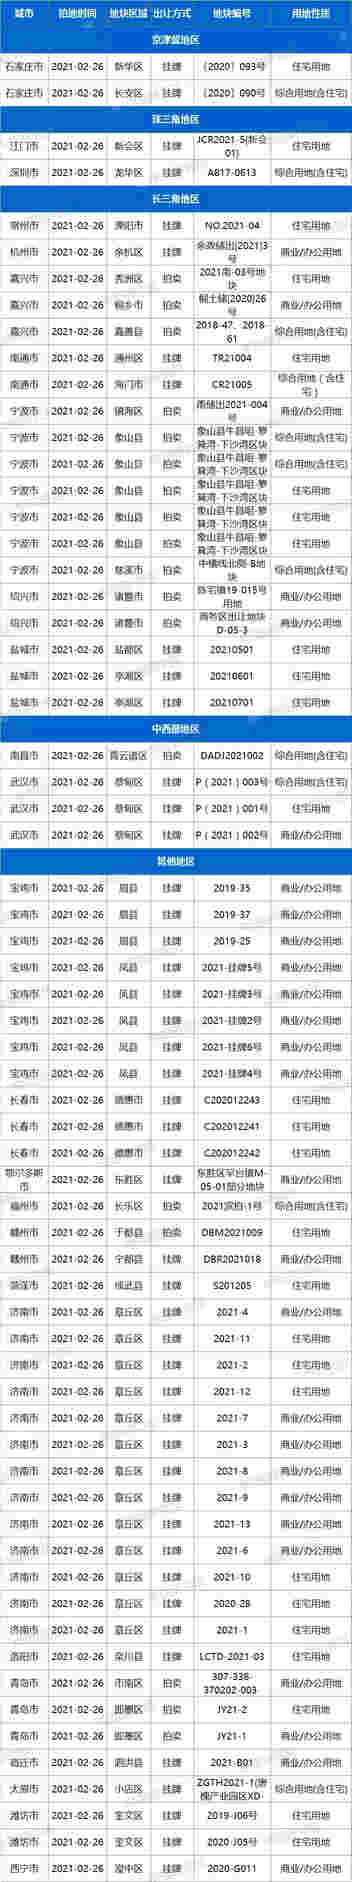 土拍预告：2月26日25城65宗地块出让，其中深圳、武汉等有住宅用地出让